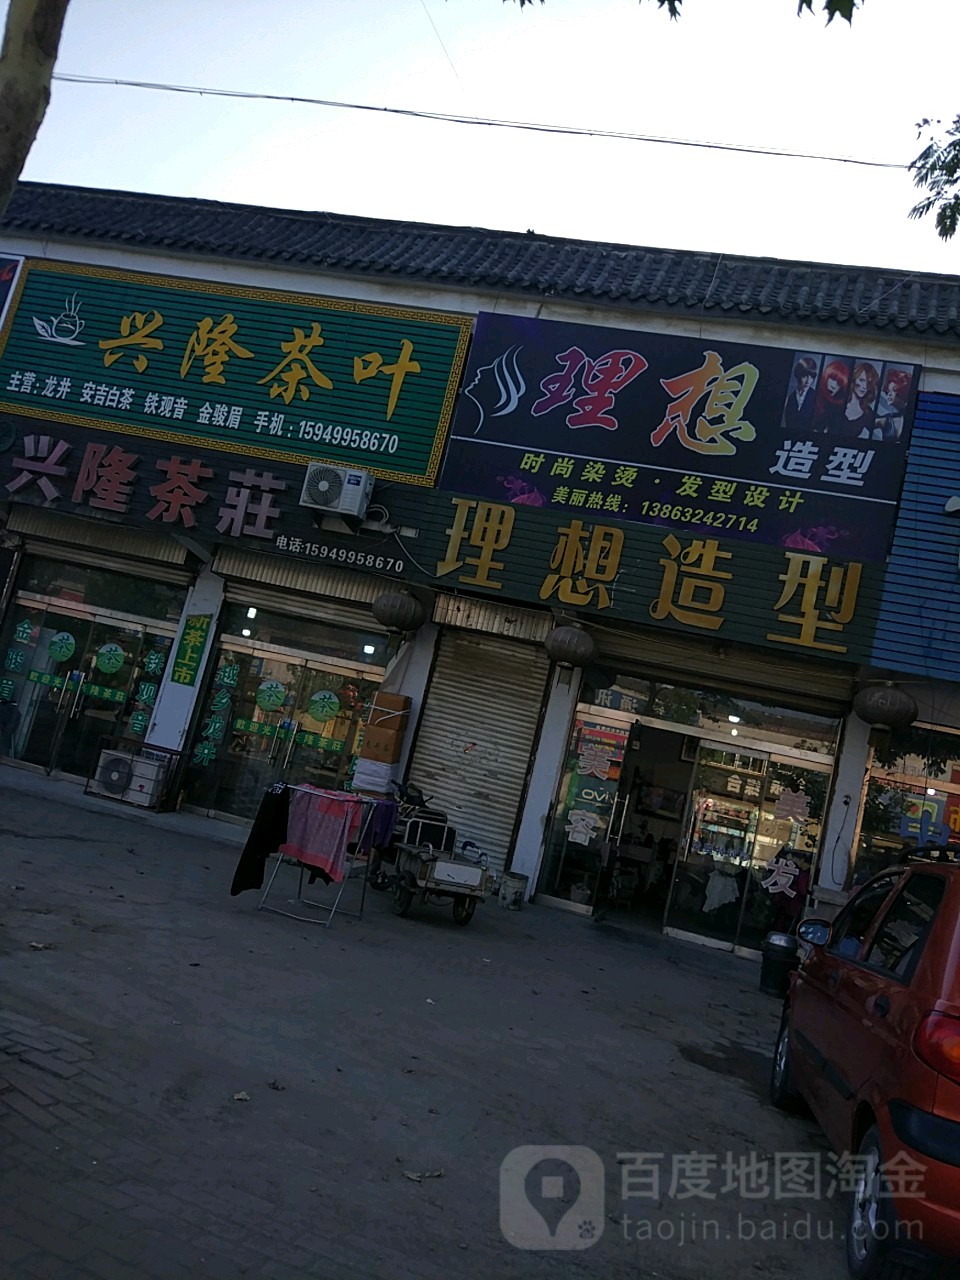 山东省枣庄市滕州市中国移动手机专卖店(如意通讯店)